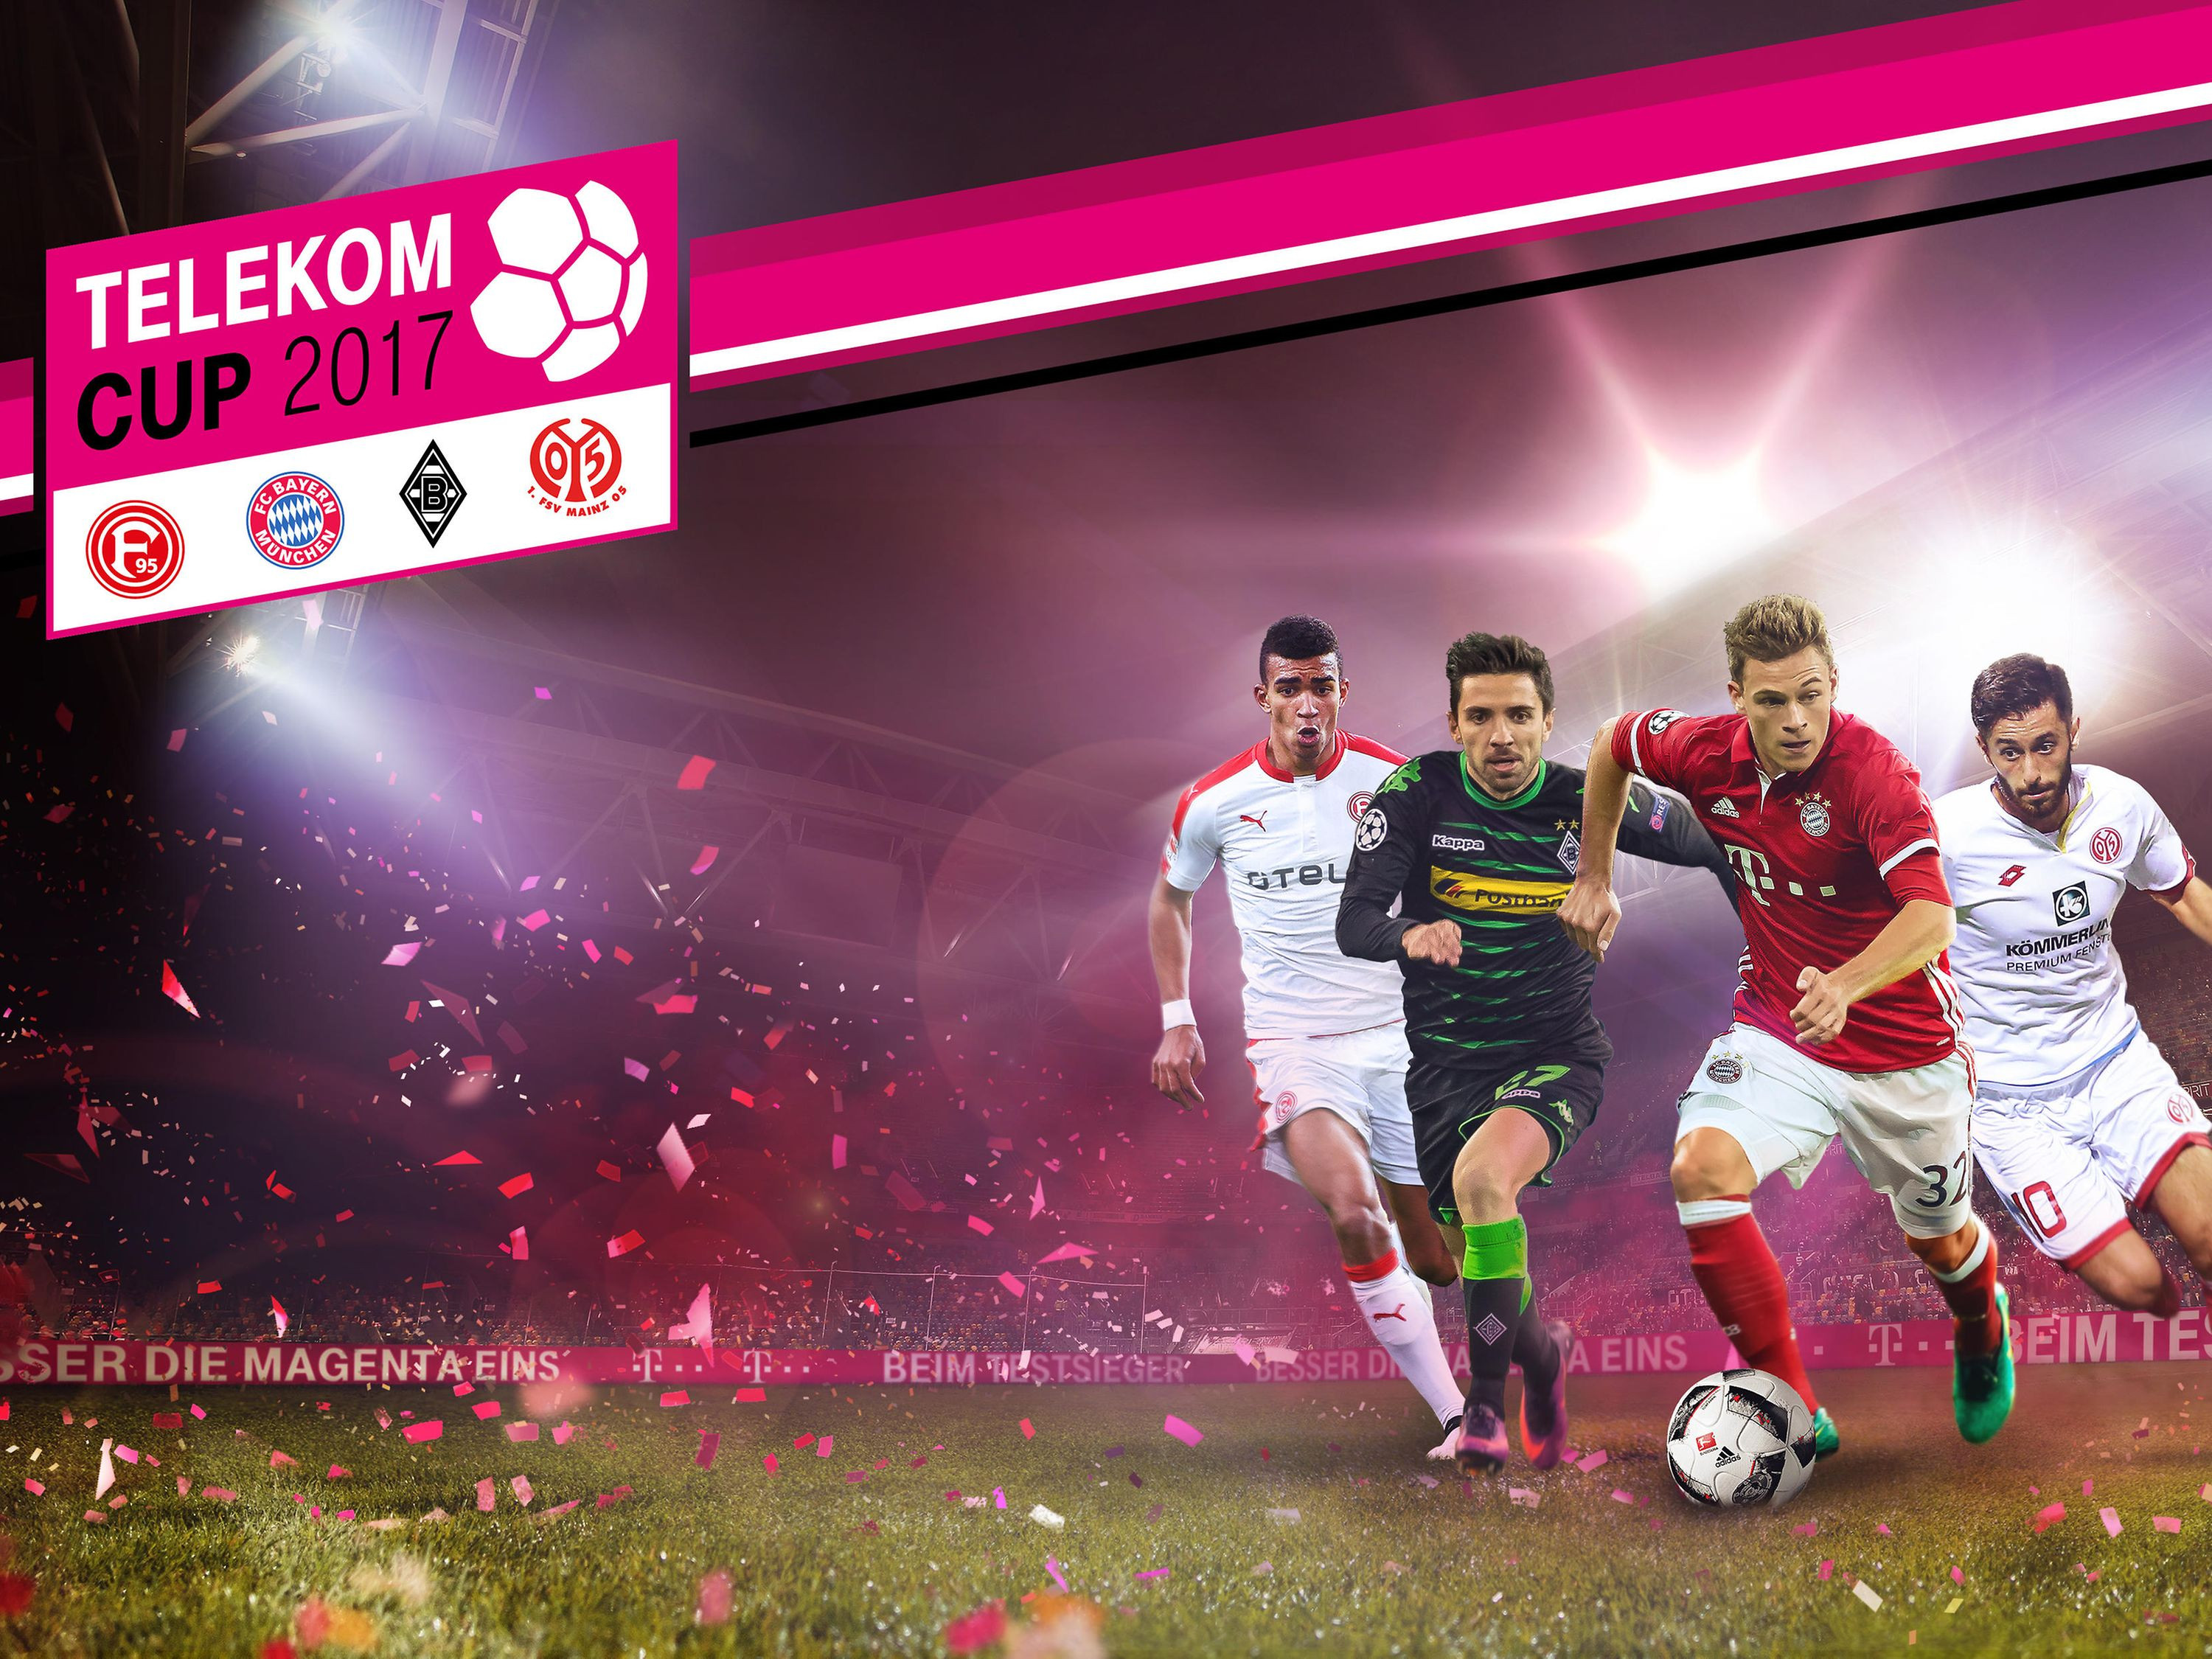 Telekom Geburtstagsgeschenk 2017
 Telekom Cup 2017 – Spitzenfußball vor Start der Bundesliga